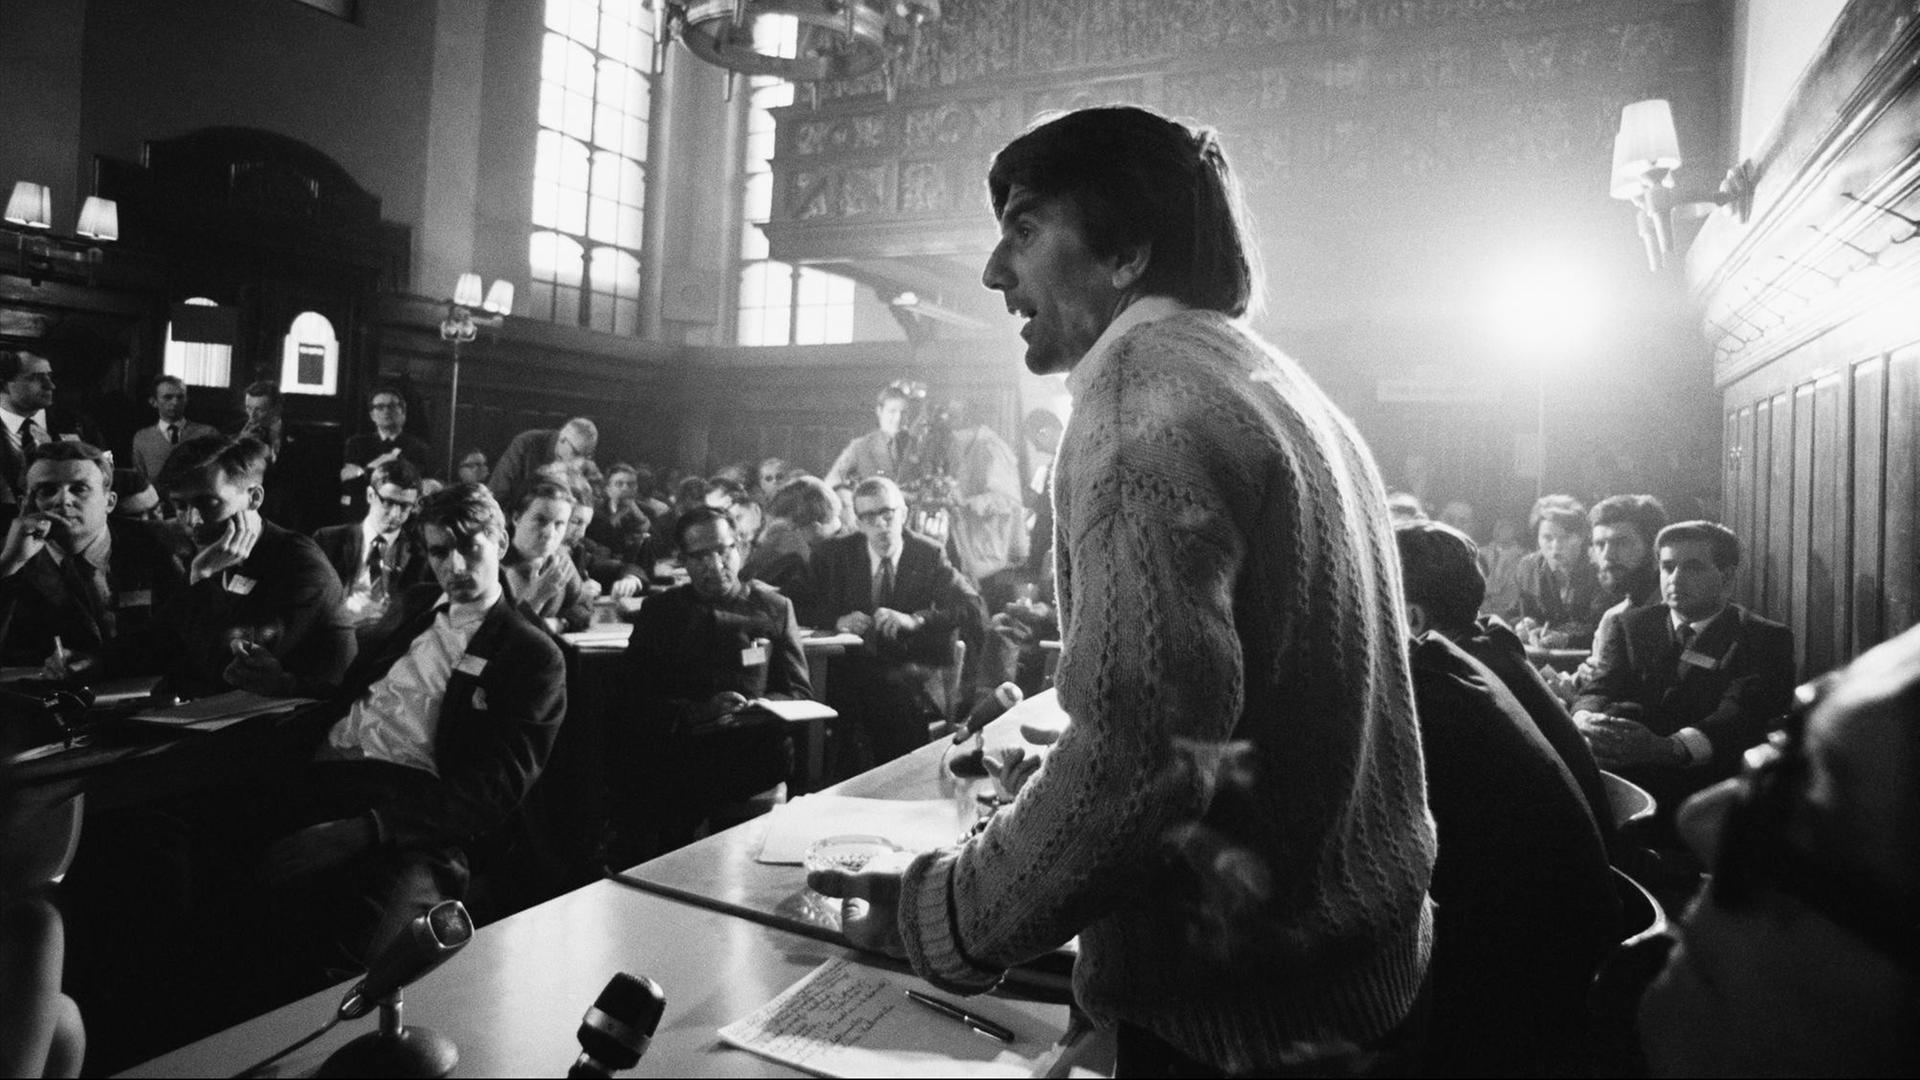 Robert Lebeck: Rudi Dutschke, Wortführer der deutschen Studentenbewegung, bei einer Rede in der Prager Karls-Universität, 3. April 1968